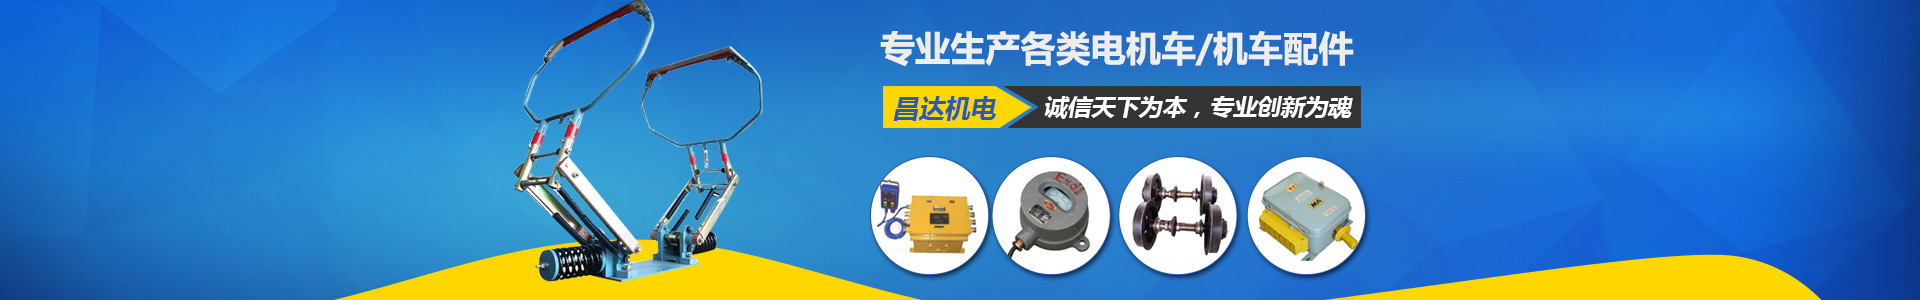 湘潭昌达机电有限公司_电机生产厂家|湖南电机车销售|机车配件